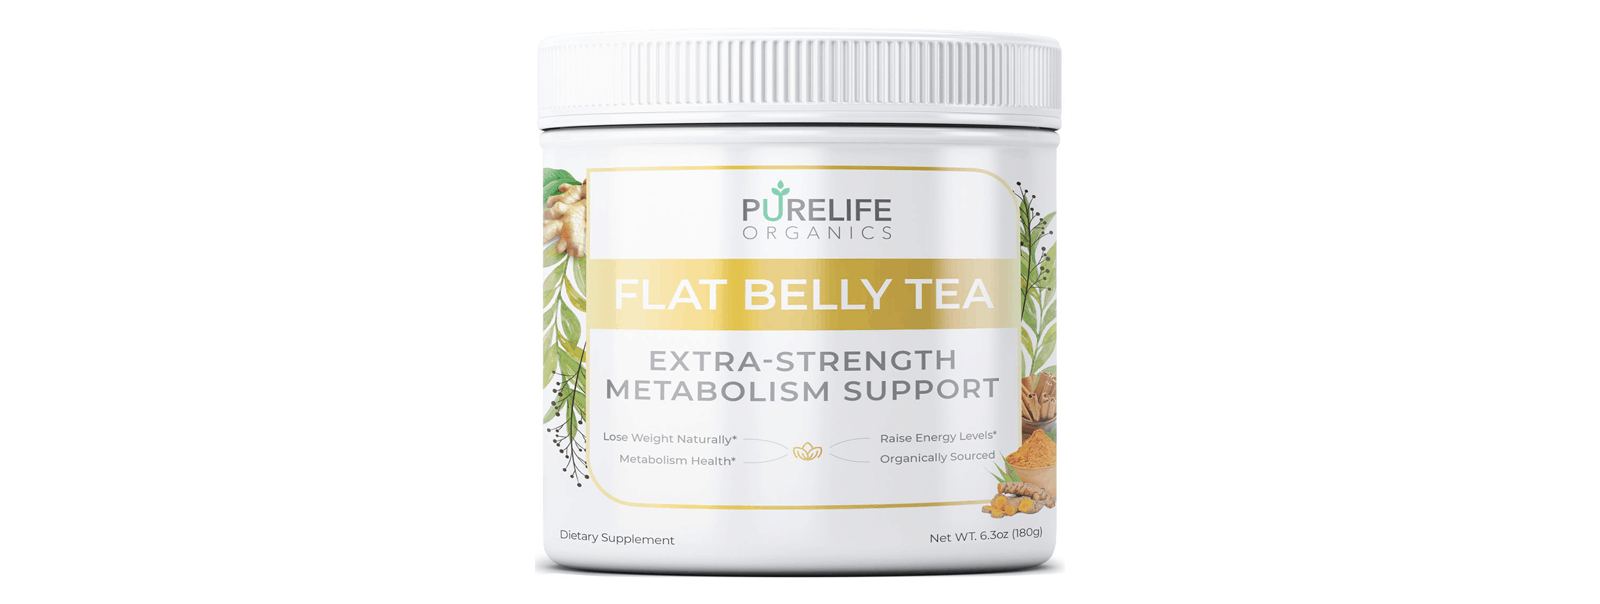 flat belly tea side effects